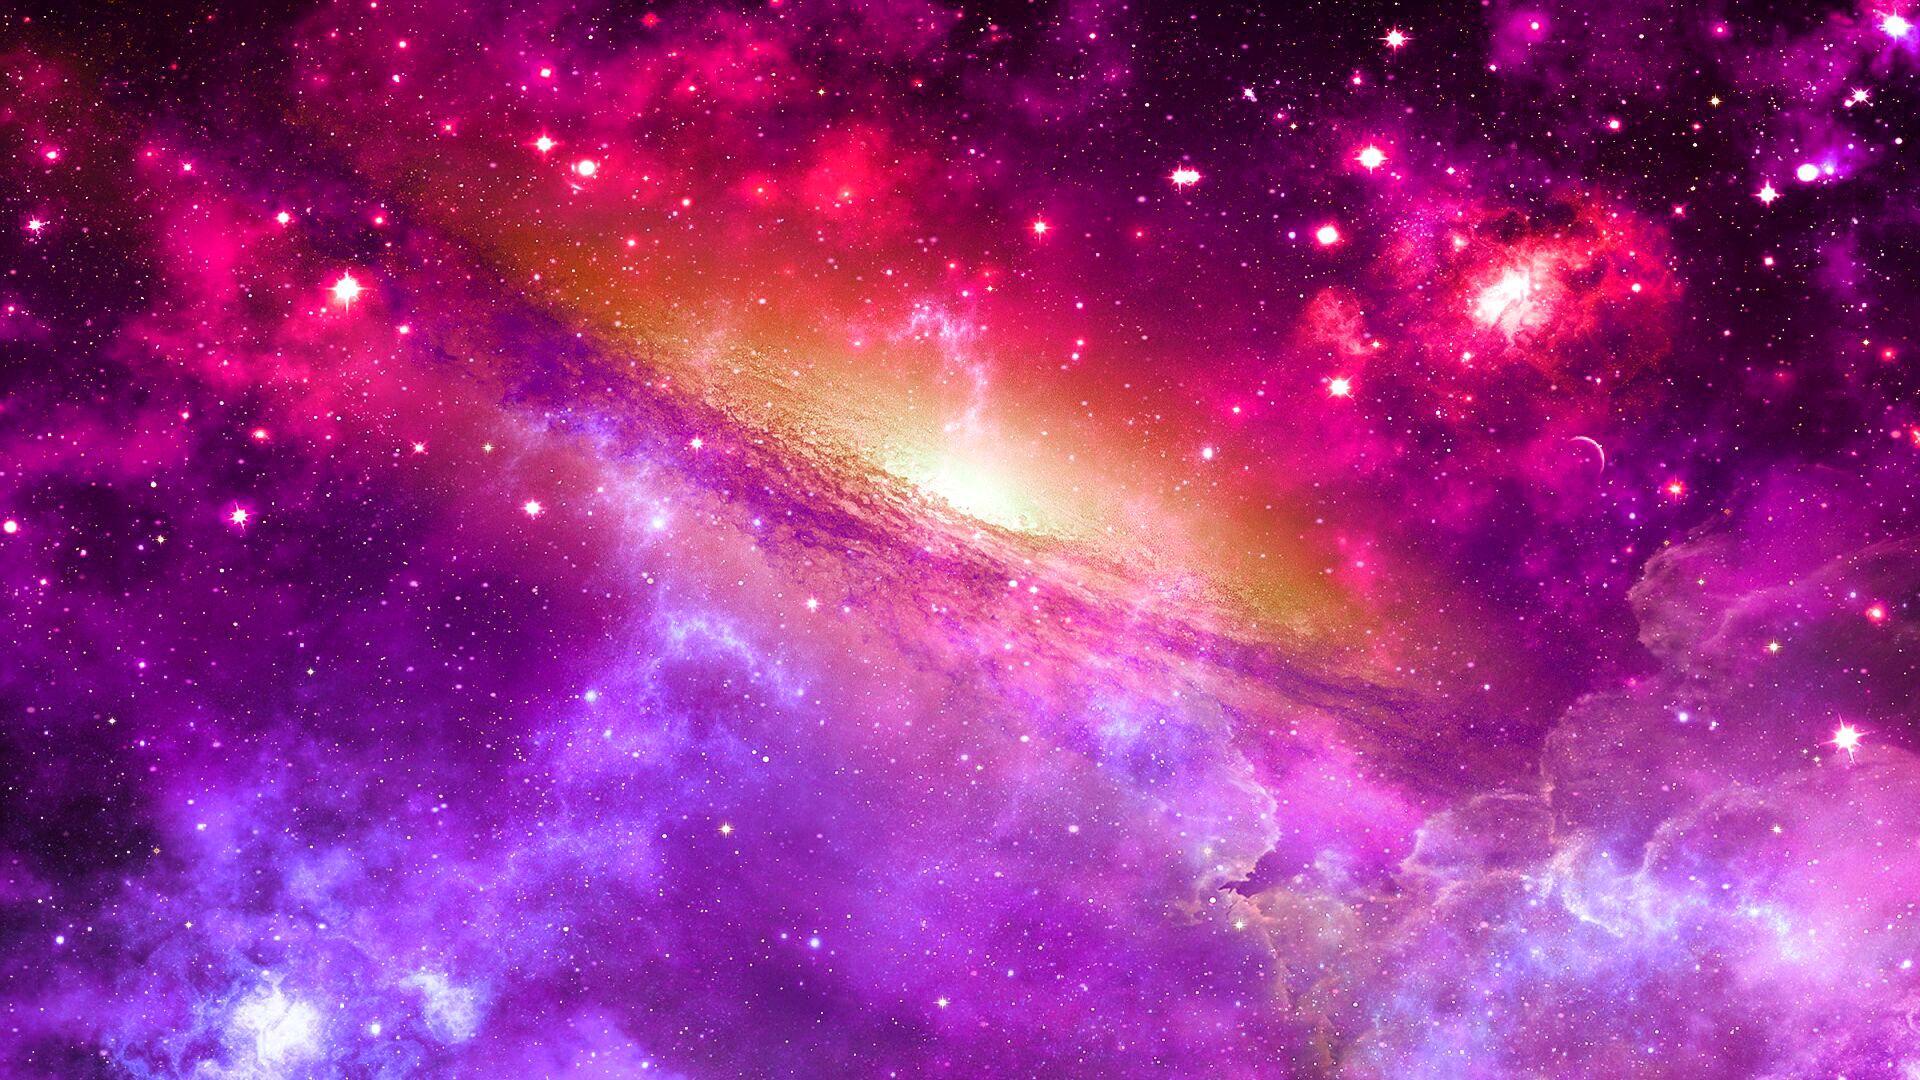 Hình nền động vật thiên hà màu hồng trên WallpaperDog: Bạn là một người yêu động vật và thích những hình ảnh thiên hà đầy màu sắc? Hãy đến với WallpaperDog và khám phá những hình nền động vật thiên hà màu hồng tuyệt đẹp. Chắc chắn bạn sẽ cảm thấy thư giãn, mơ mộng hơn khi đưa chúng làm hình nền cho thiết bị của mình.